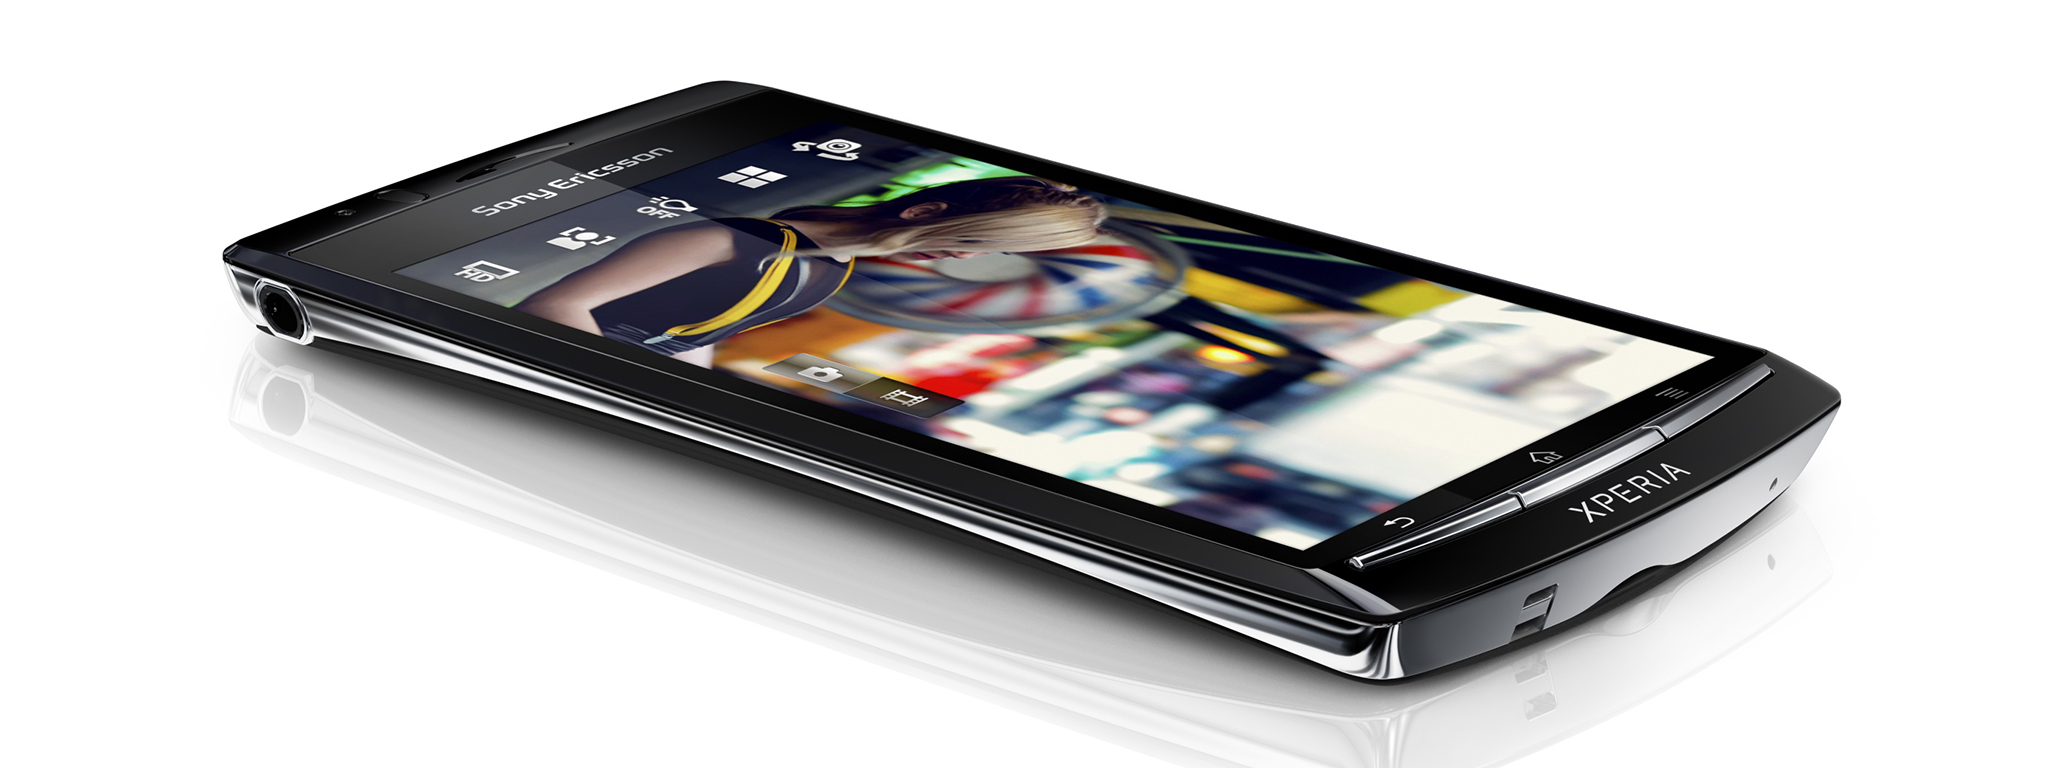 Sony Xperia: chặng đường từ Windows Mobile sang Android nhưng chưa bao giờ mất chất riêng